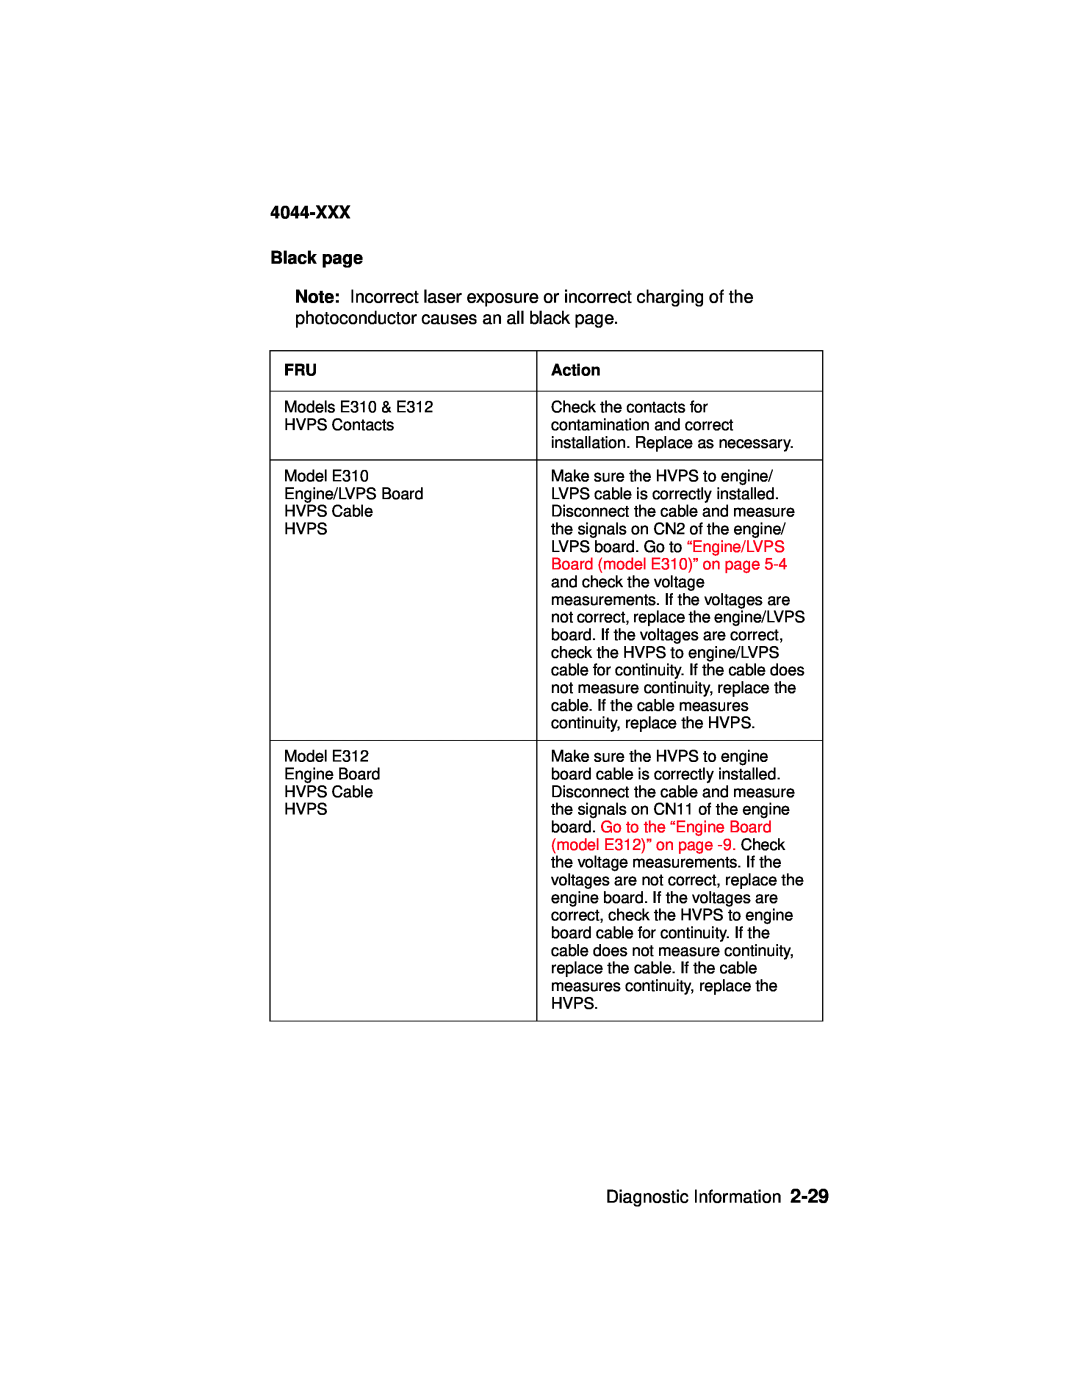 Lexmark E310, 4044-XXX manual XXX Black page, Diagnostic Information, Action 